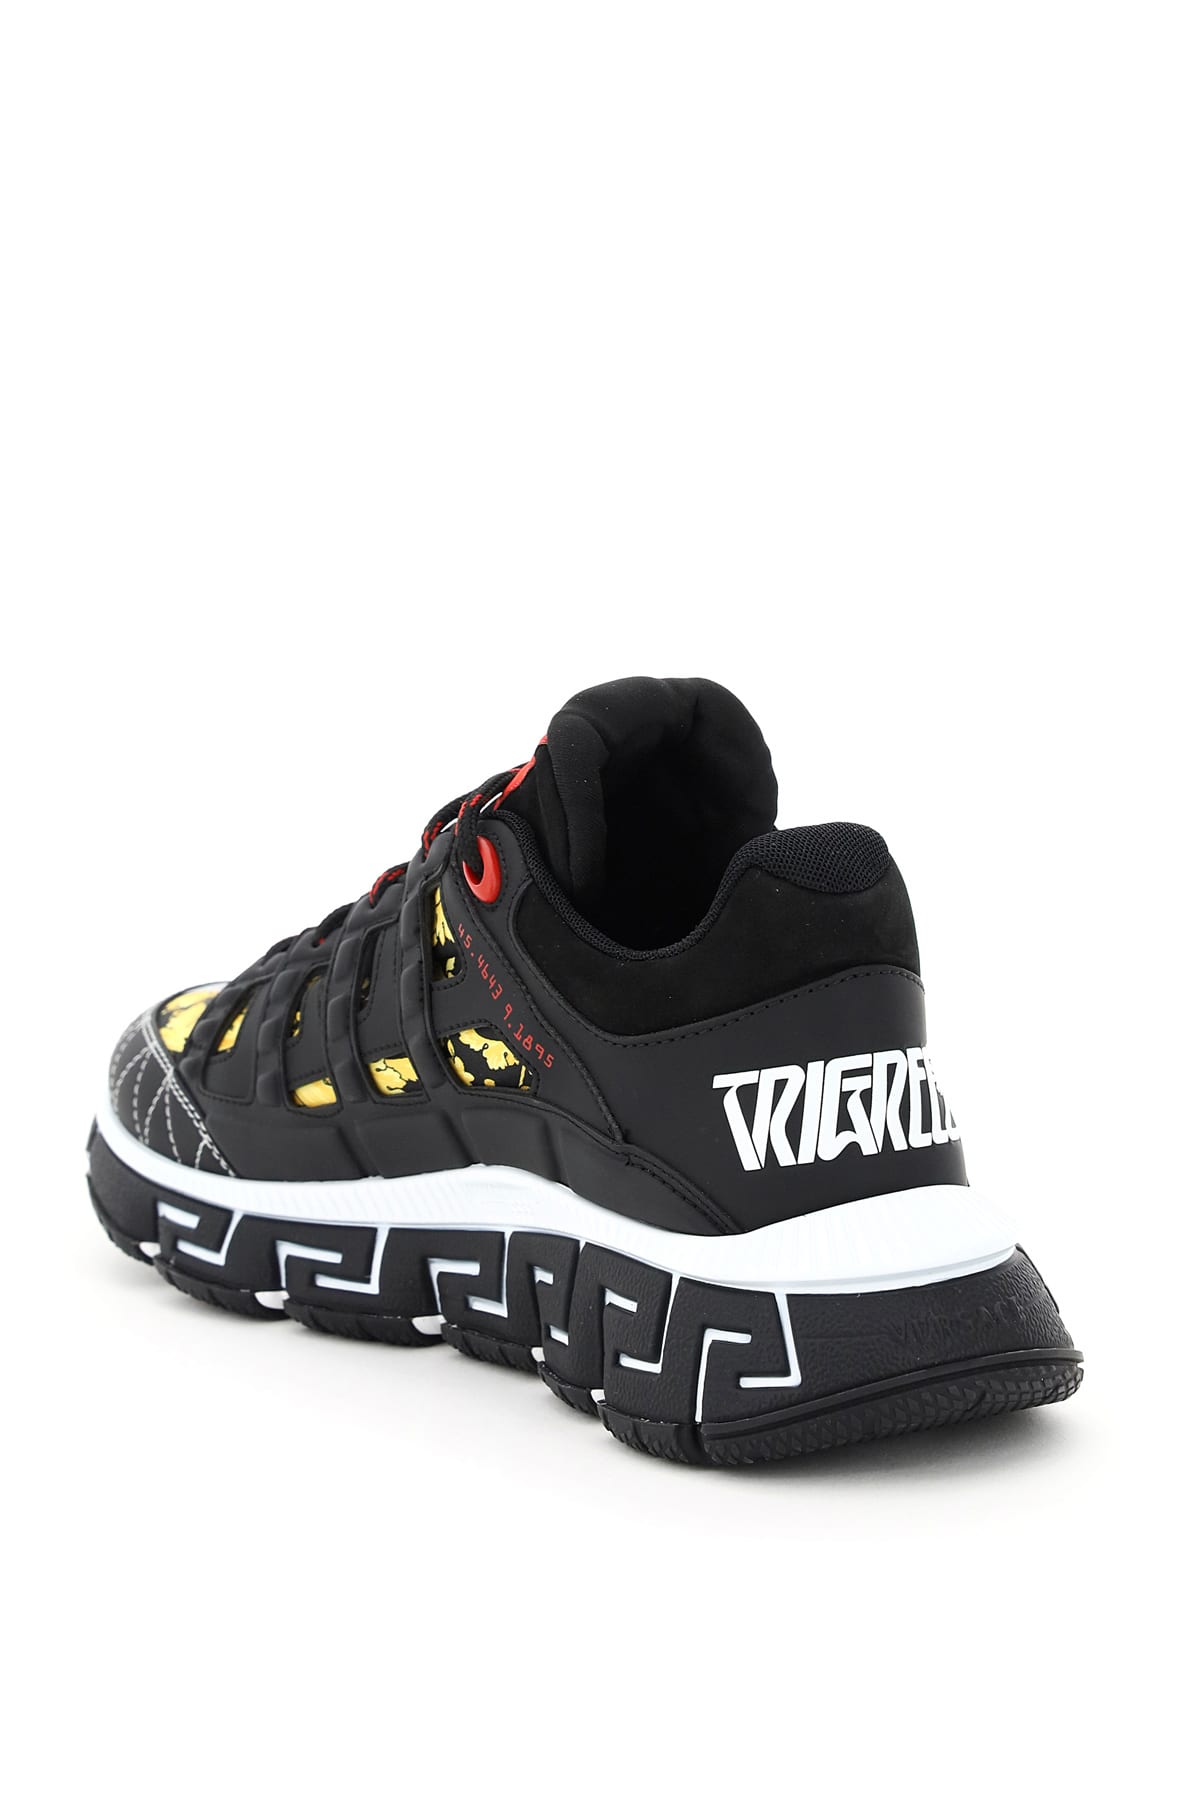 Shop Versace Trigreca Sneakers In Black/yellow